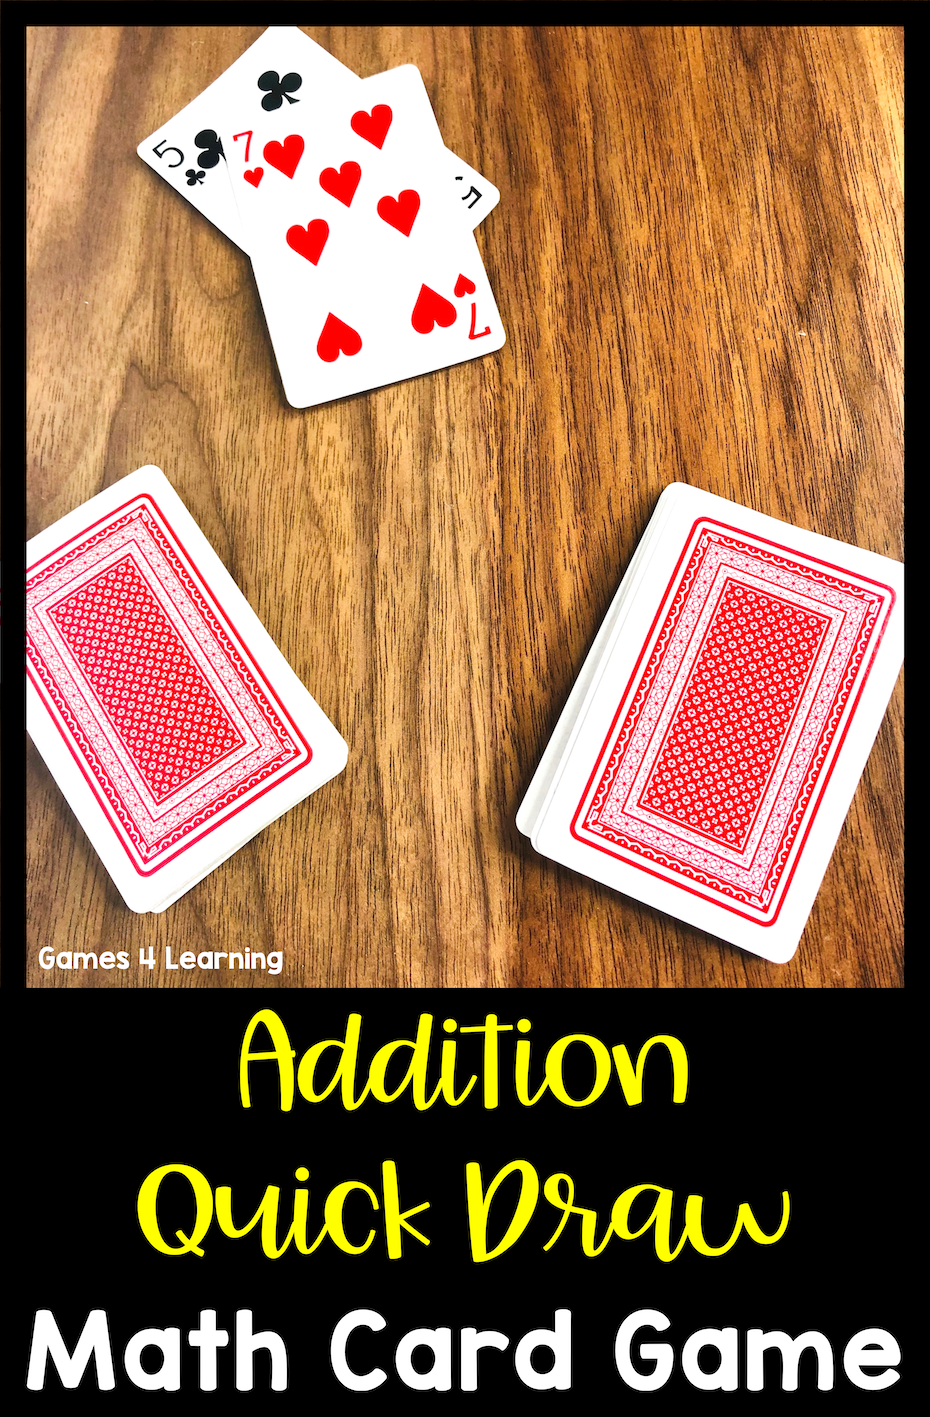 7 Simple Math Card Games